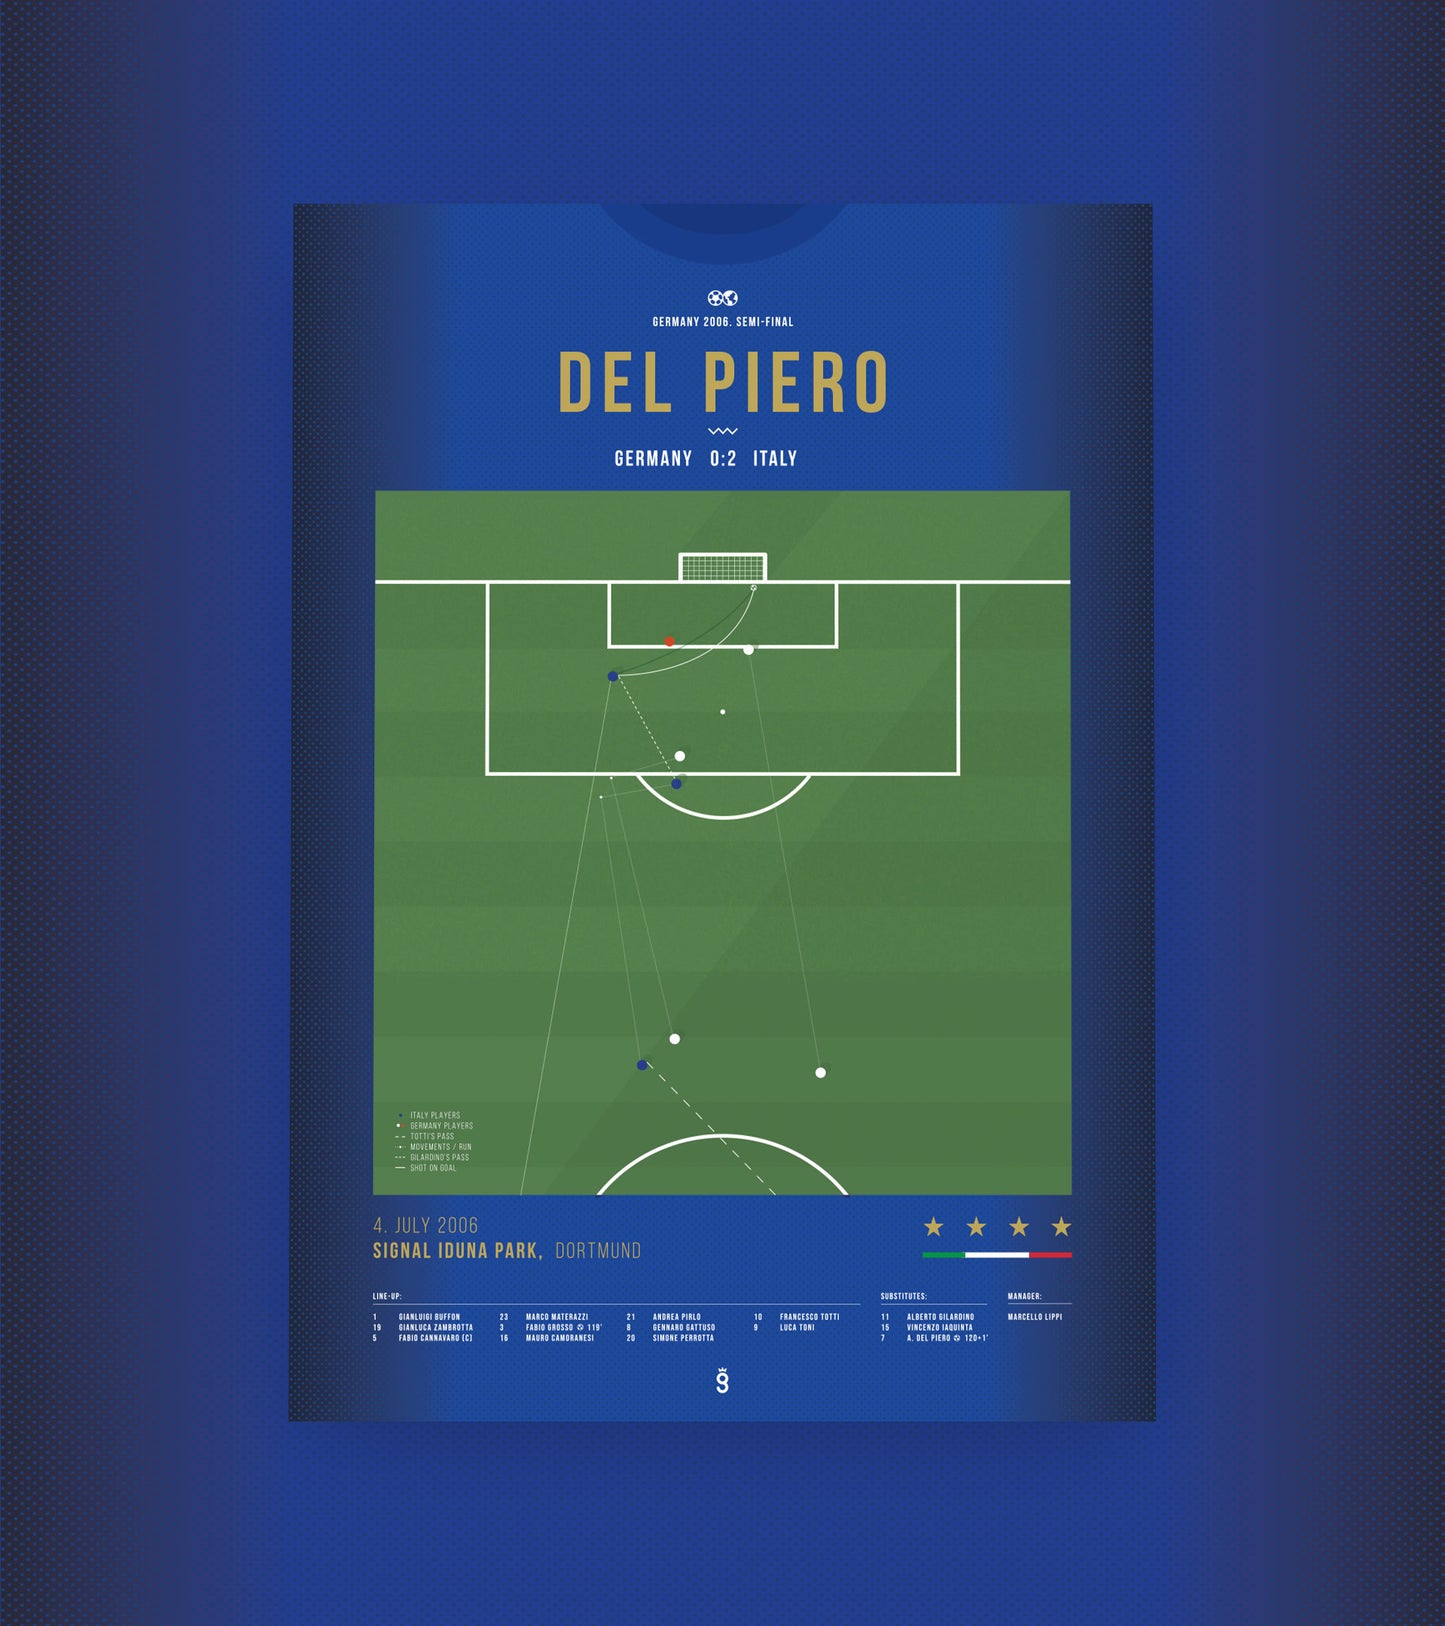 Del Piero WM-Sieg 2006 gegen Deutschland